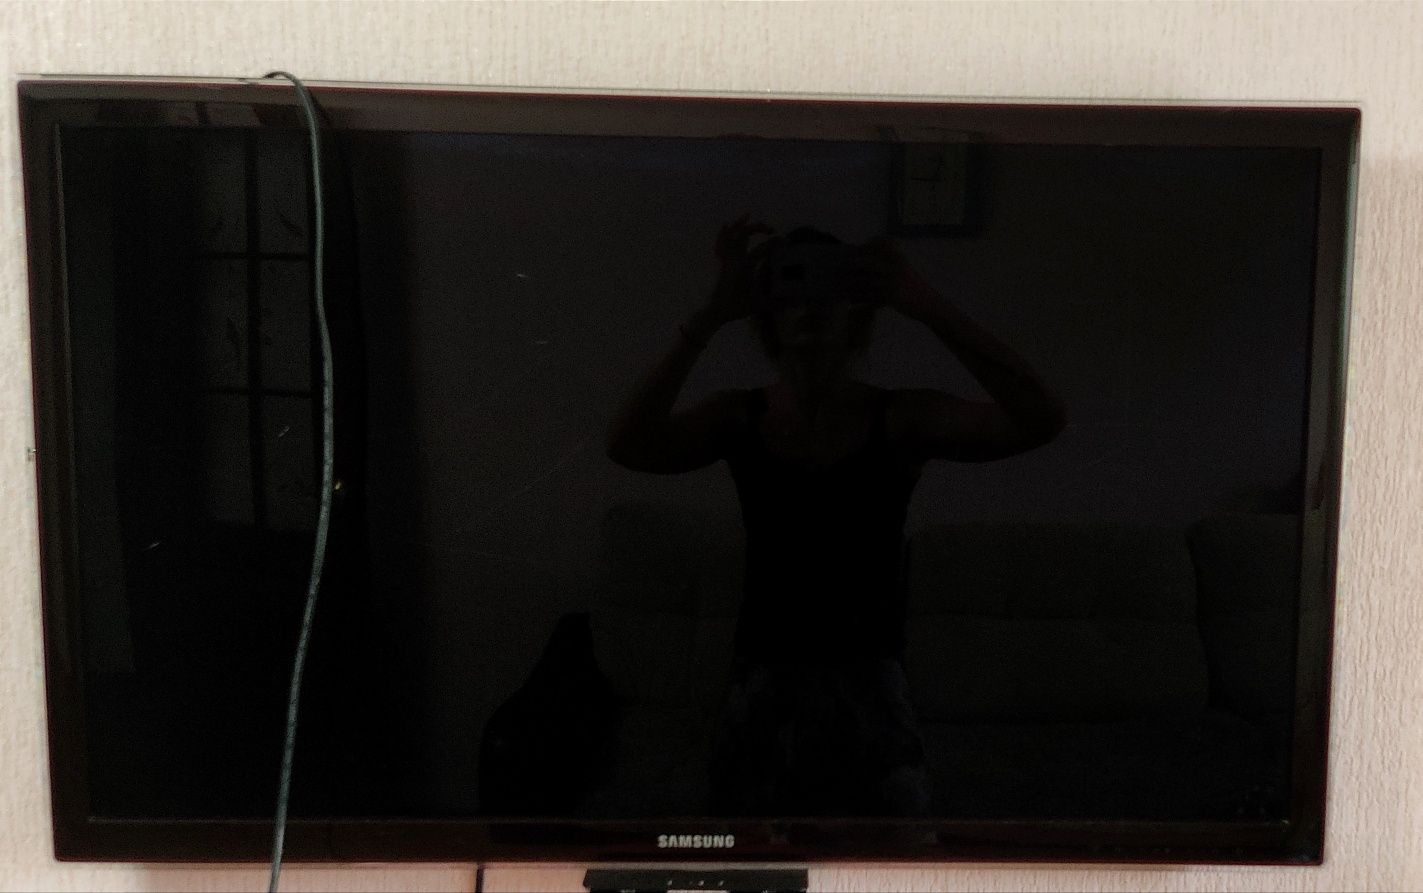 Продам ЖК телевизор Samsung, не работает